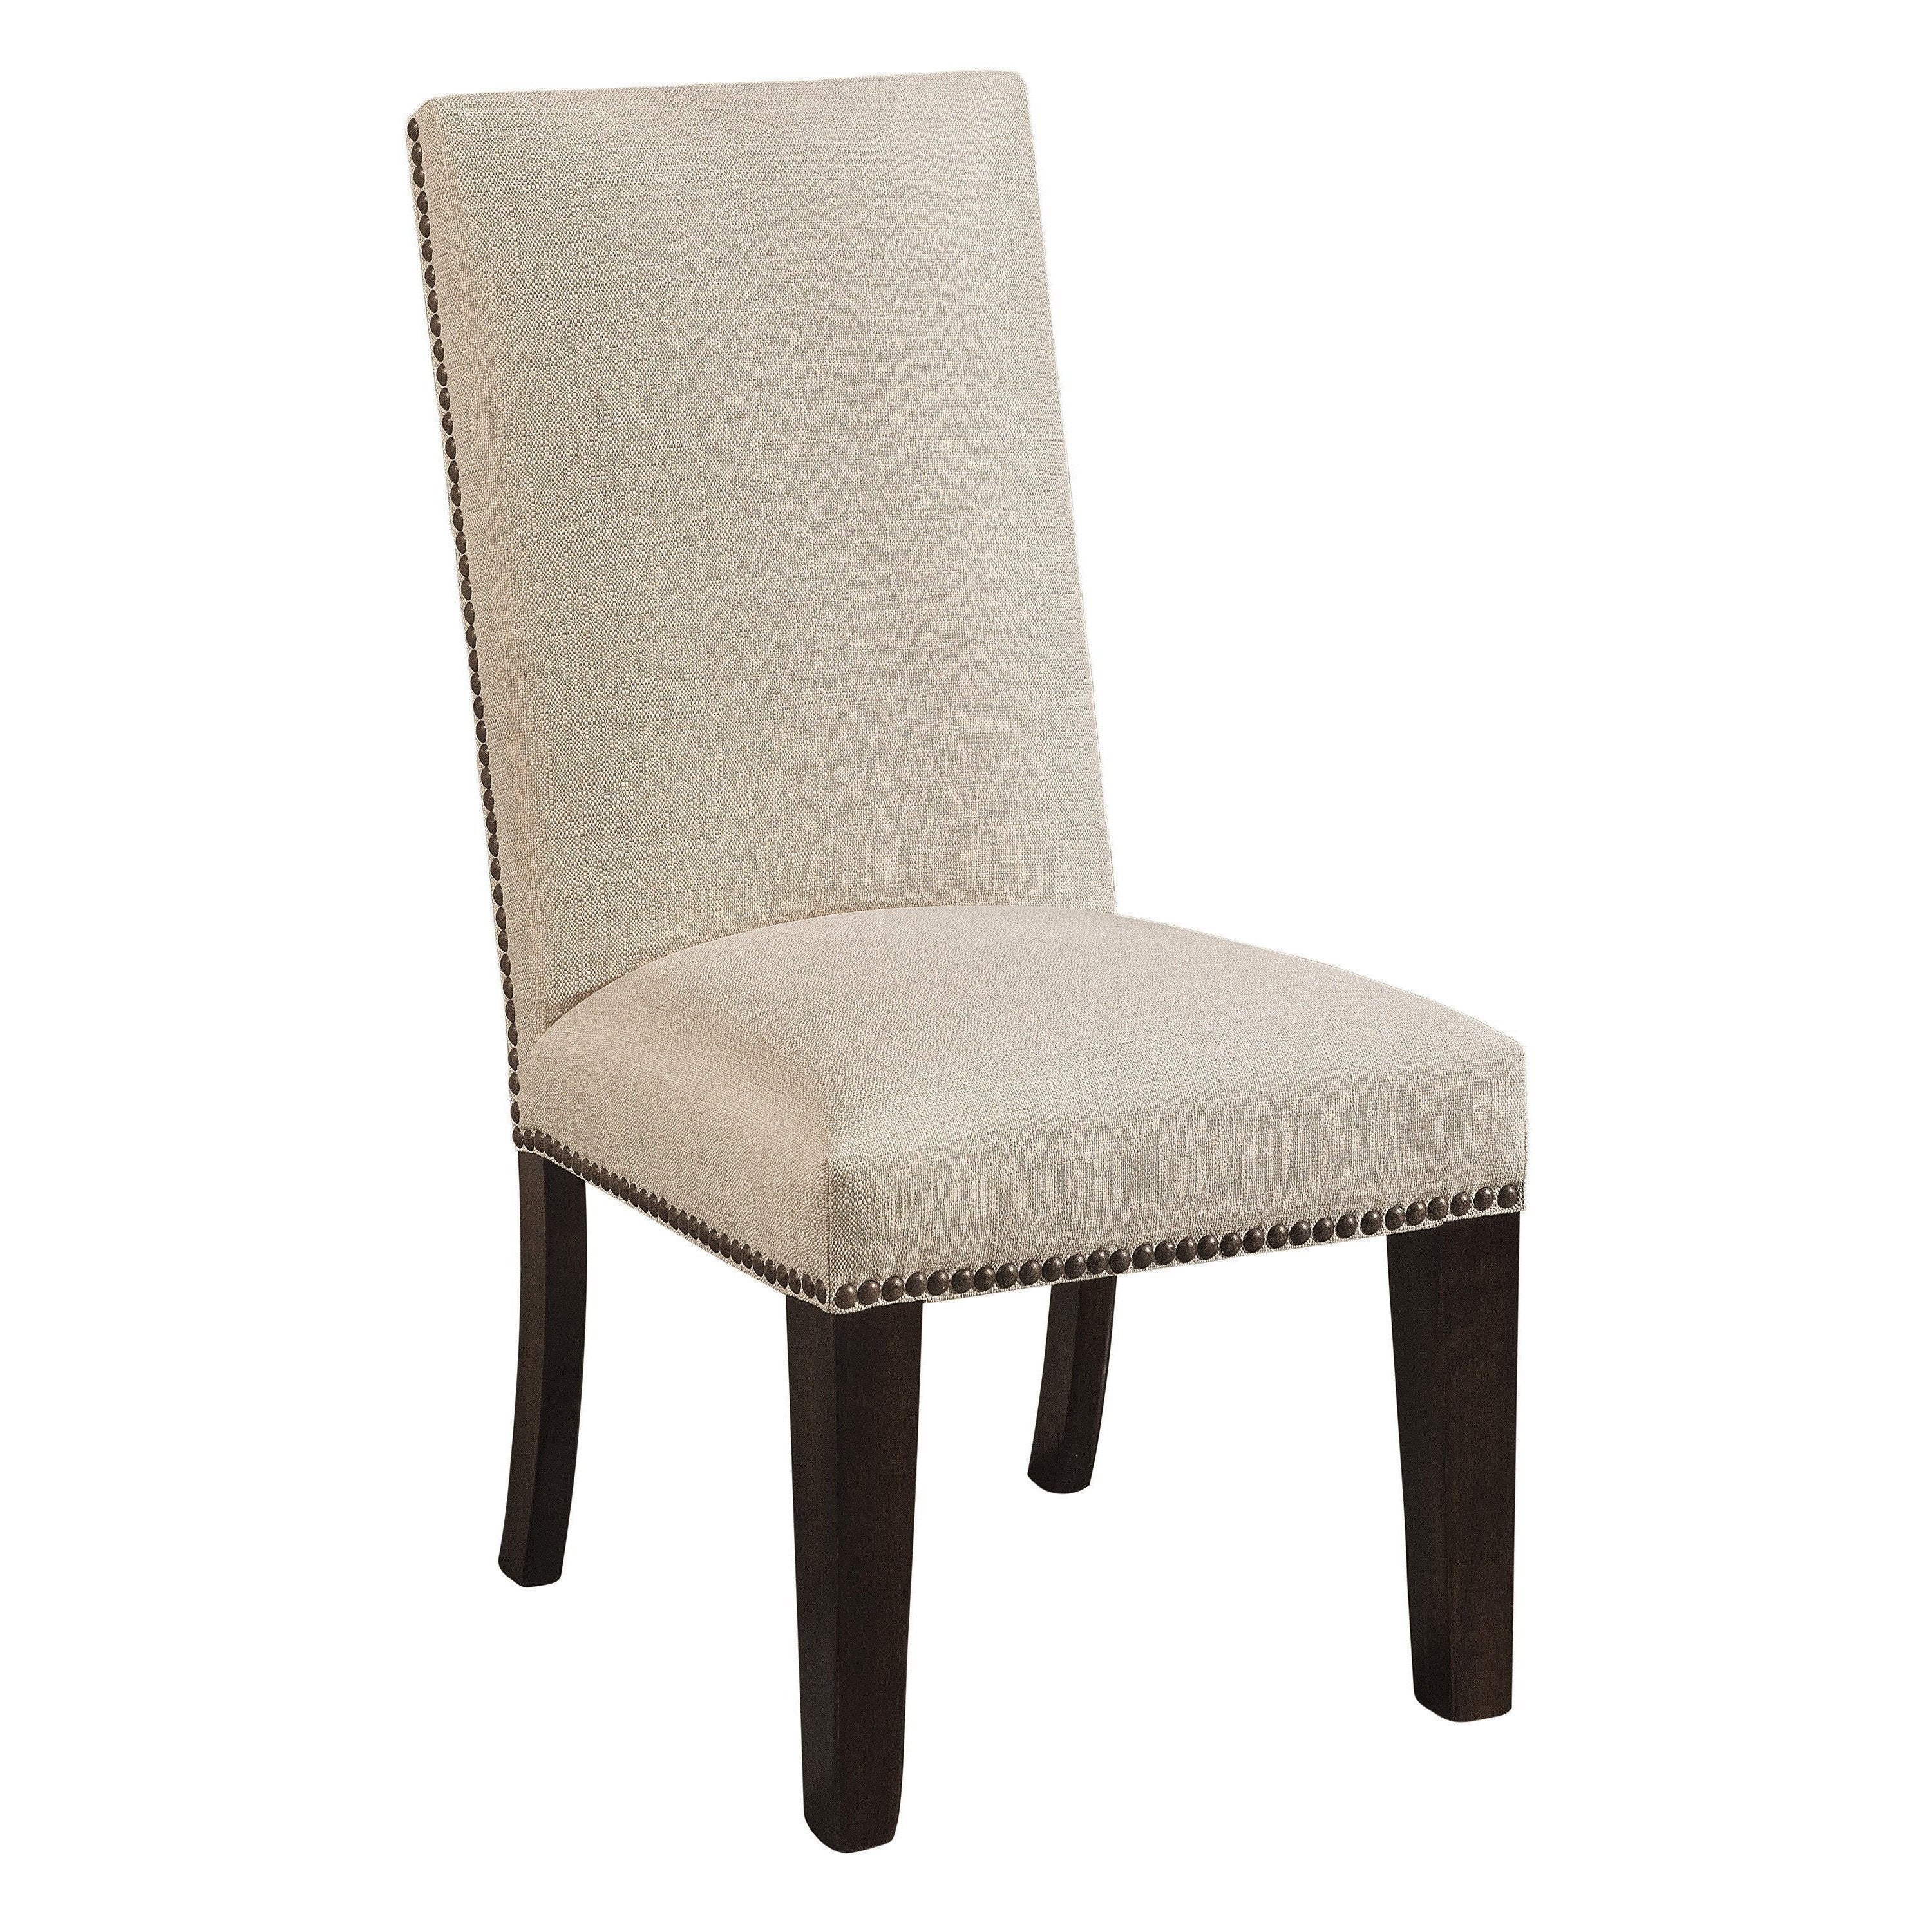 corbin-side-chair-260108.jpg